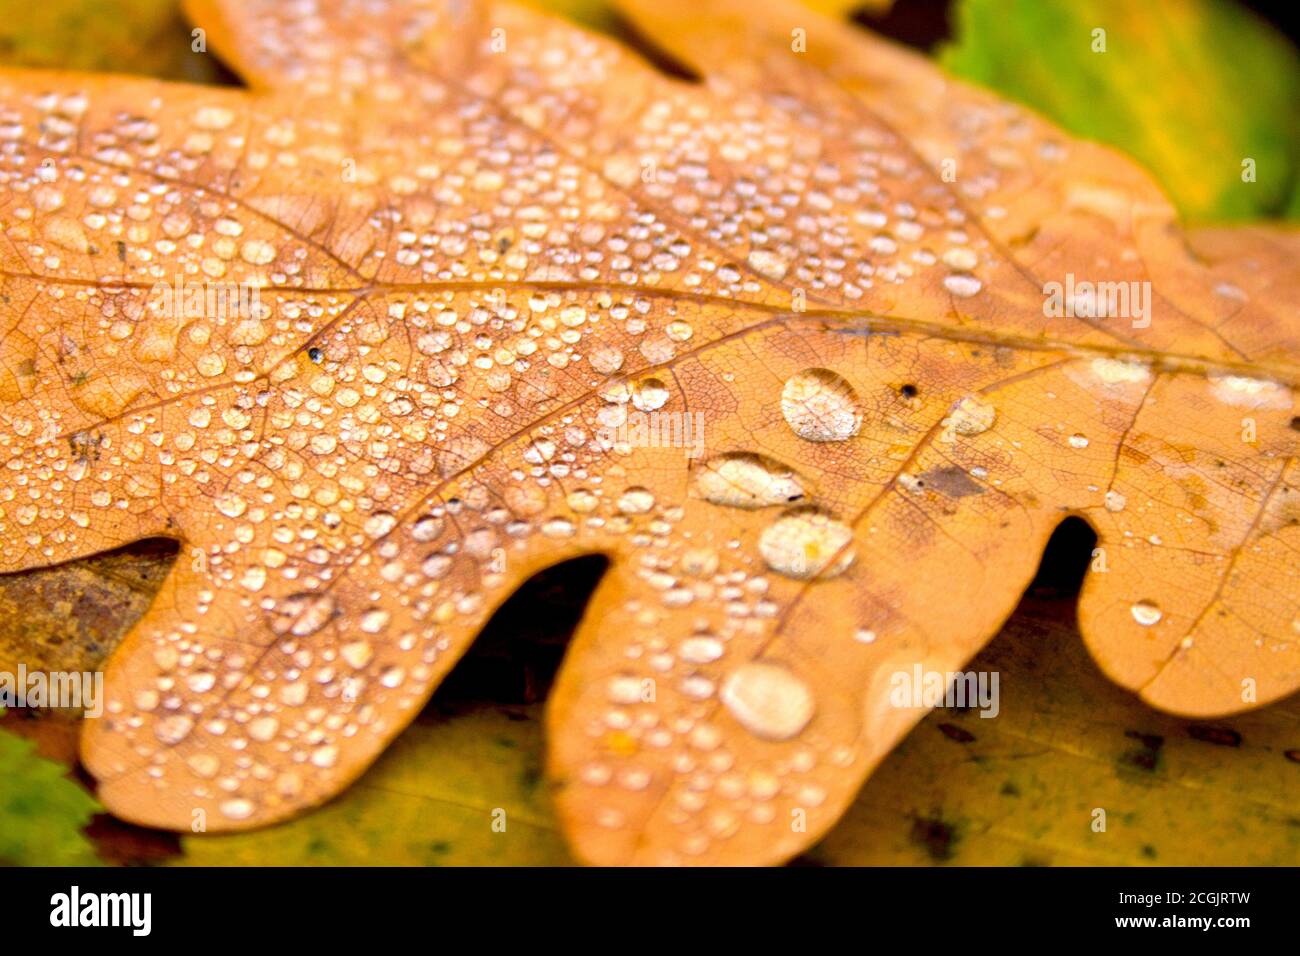 Herbst Natur Hintergrund. Gefallenes gelbes Blattgold von Eiche Baum mit Wassertropfen auf hell bunten grün orange braune Blätter Textur Hintergrund. Schließen- Stockfoto